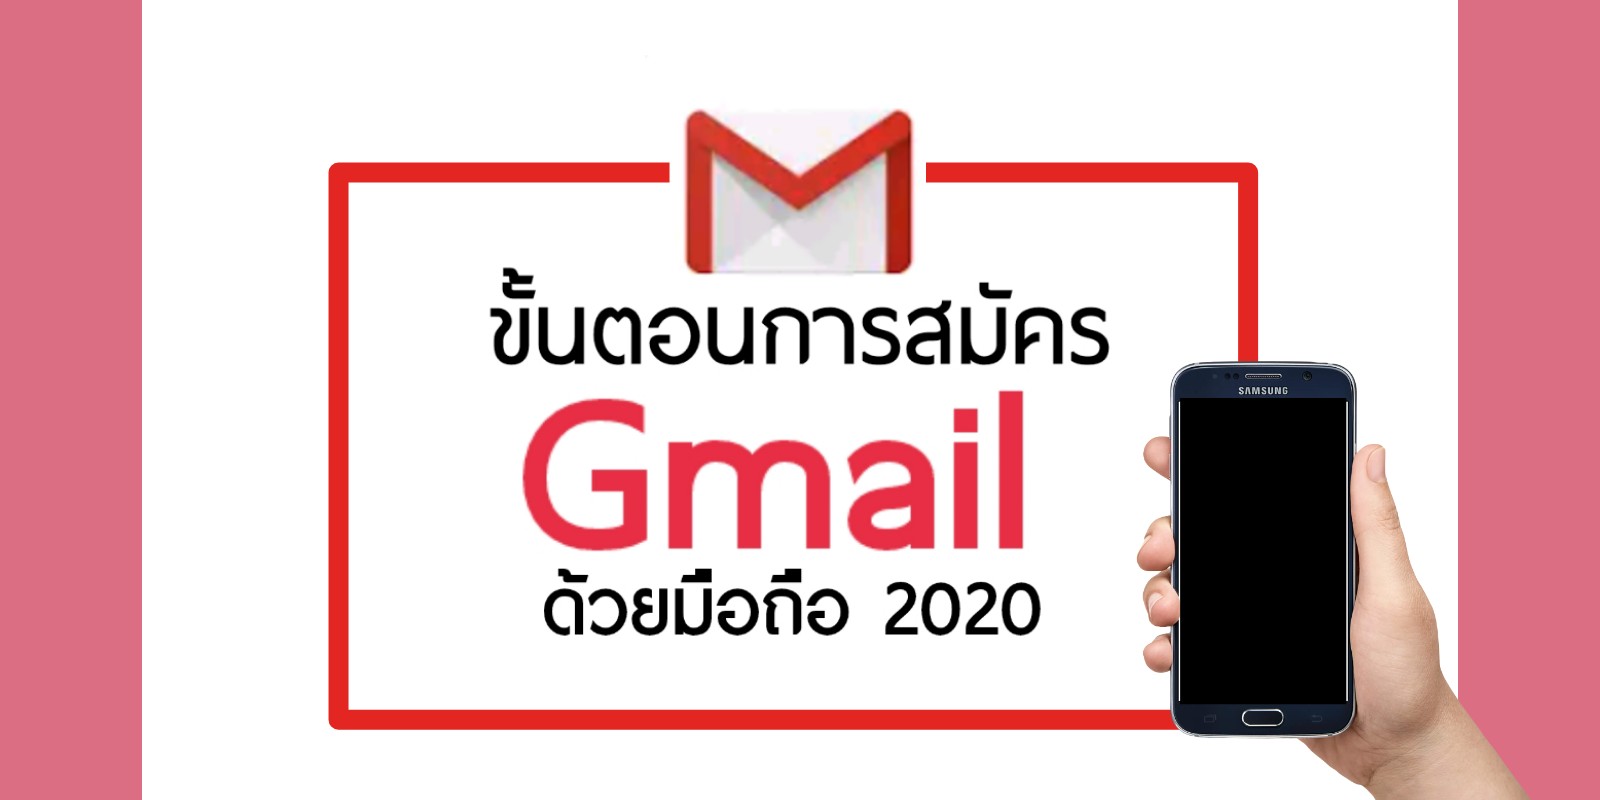 ขั้นตอนการสมัคร Gmail ด้วยมือถือ ล่าสุด 2020